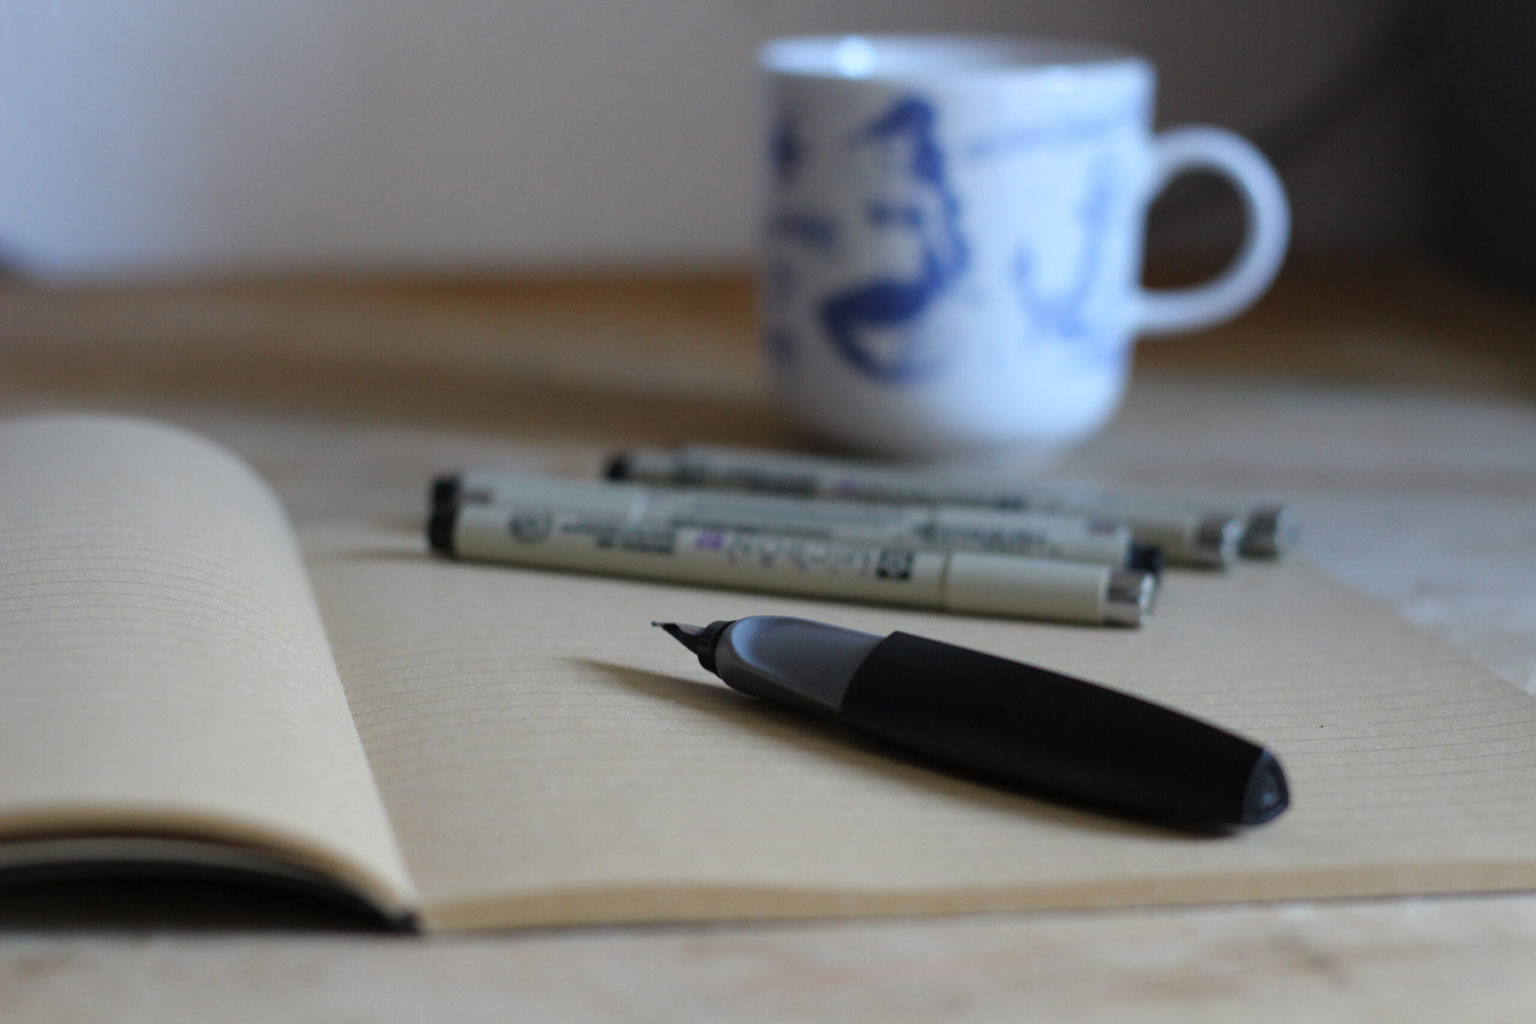 Das Bild zeigt eine Impression: Mein Schreibtisch mit einem Notizheft, einem Füller, Finelinern und einer Kaffeestasse im Hintergrund.